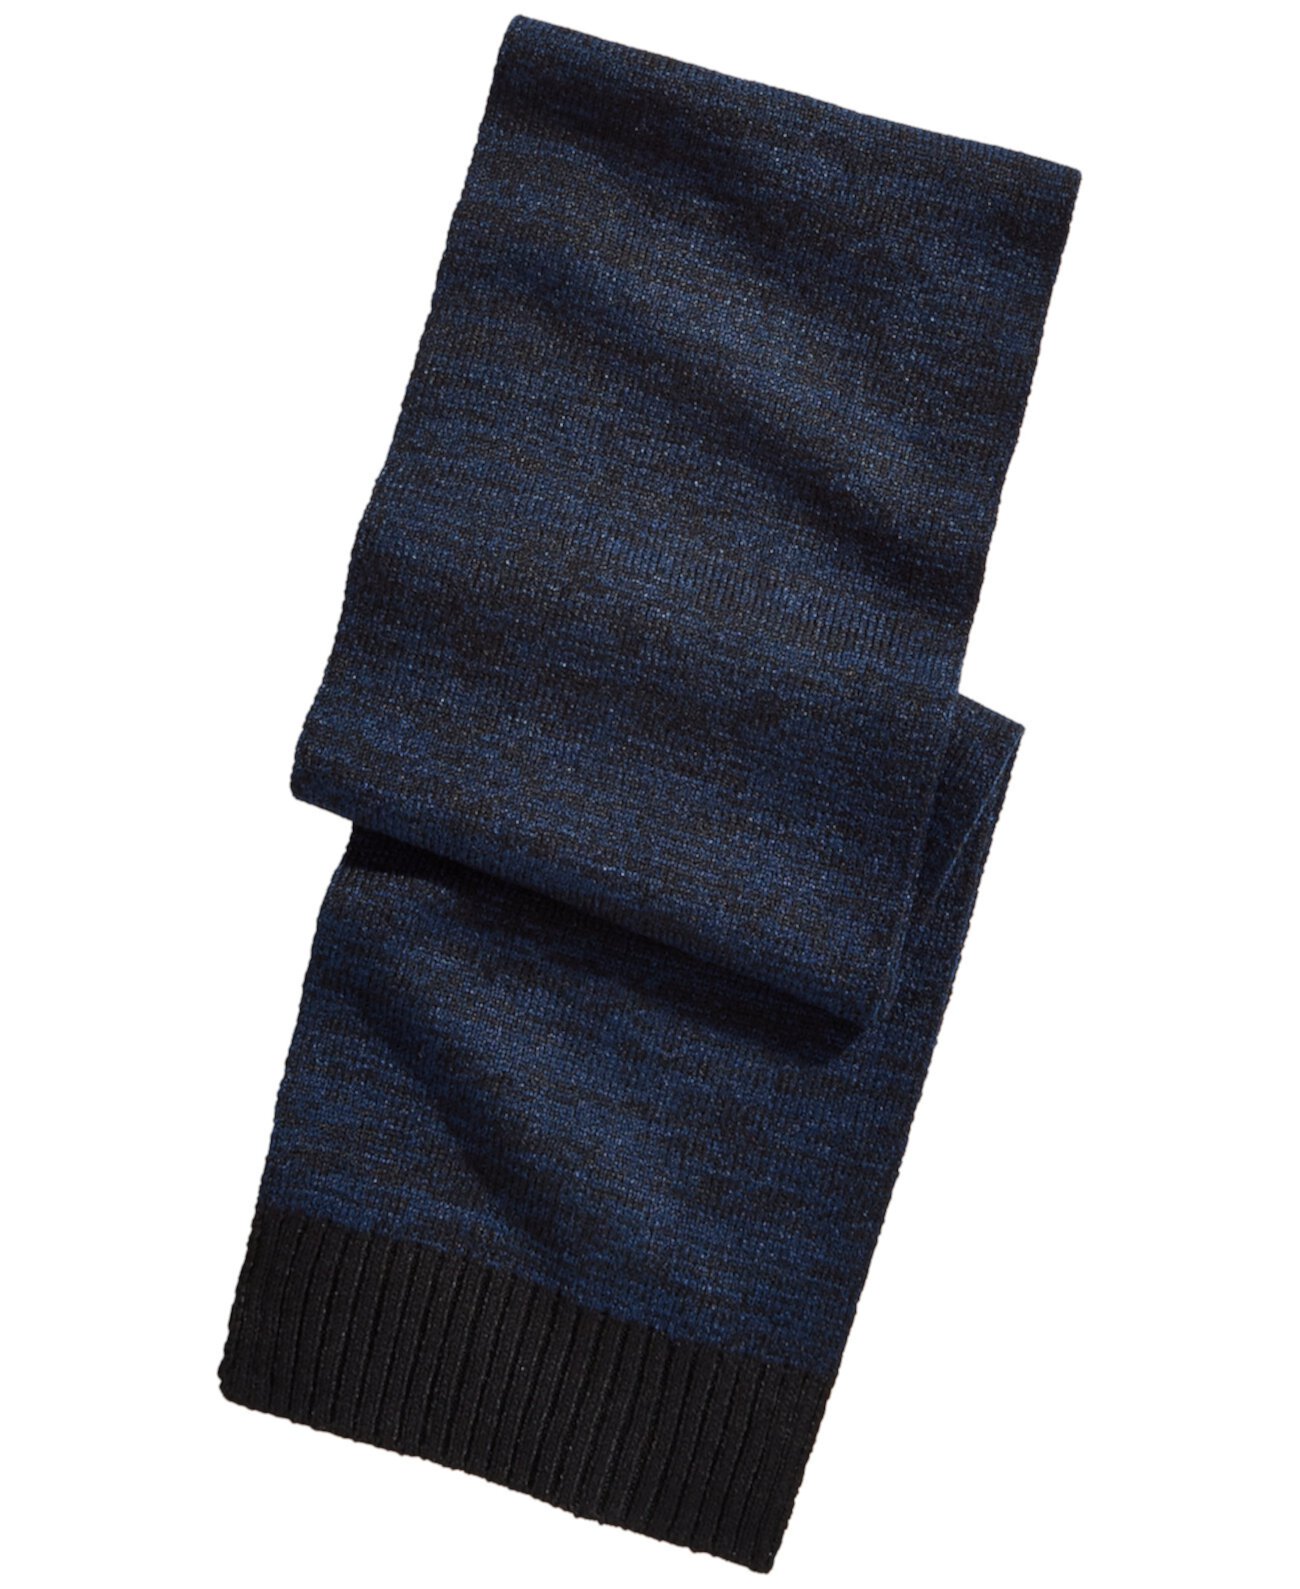 Мужской космический шарф, созданный для Macy's Alfani